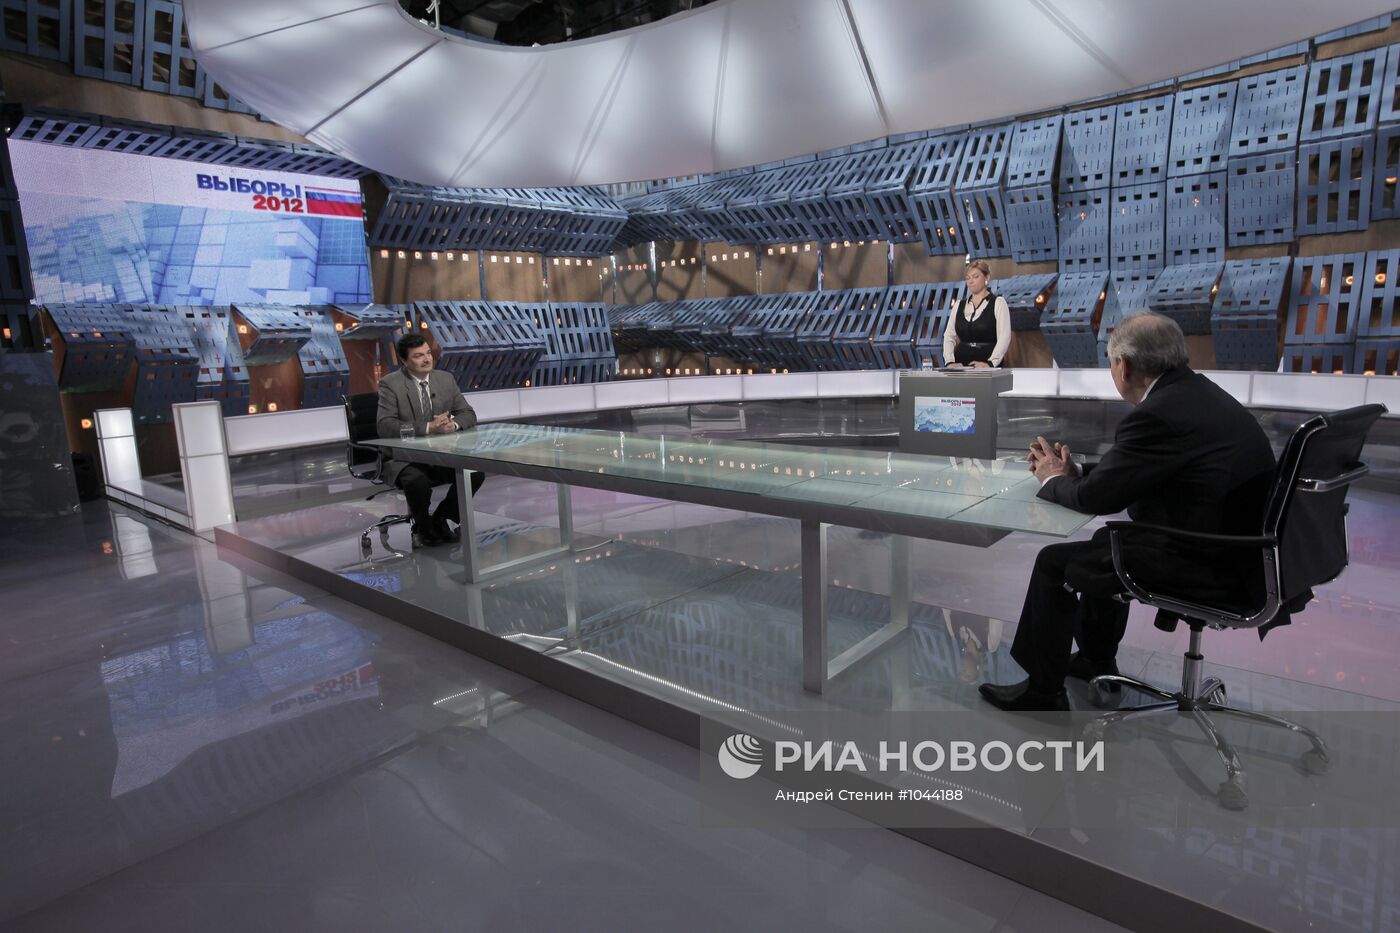 Дебаты между доверенными лицами Г. Зюганова и В. Путина